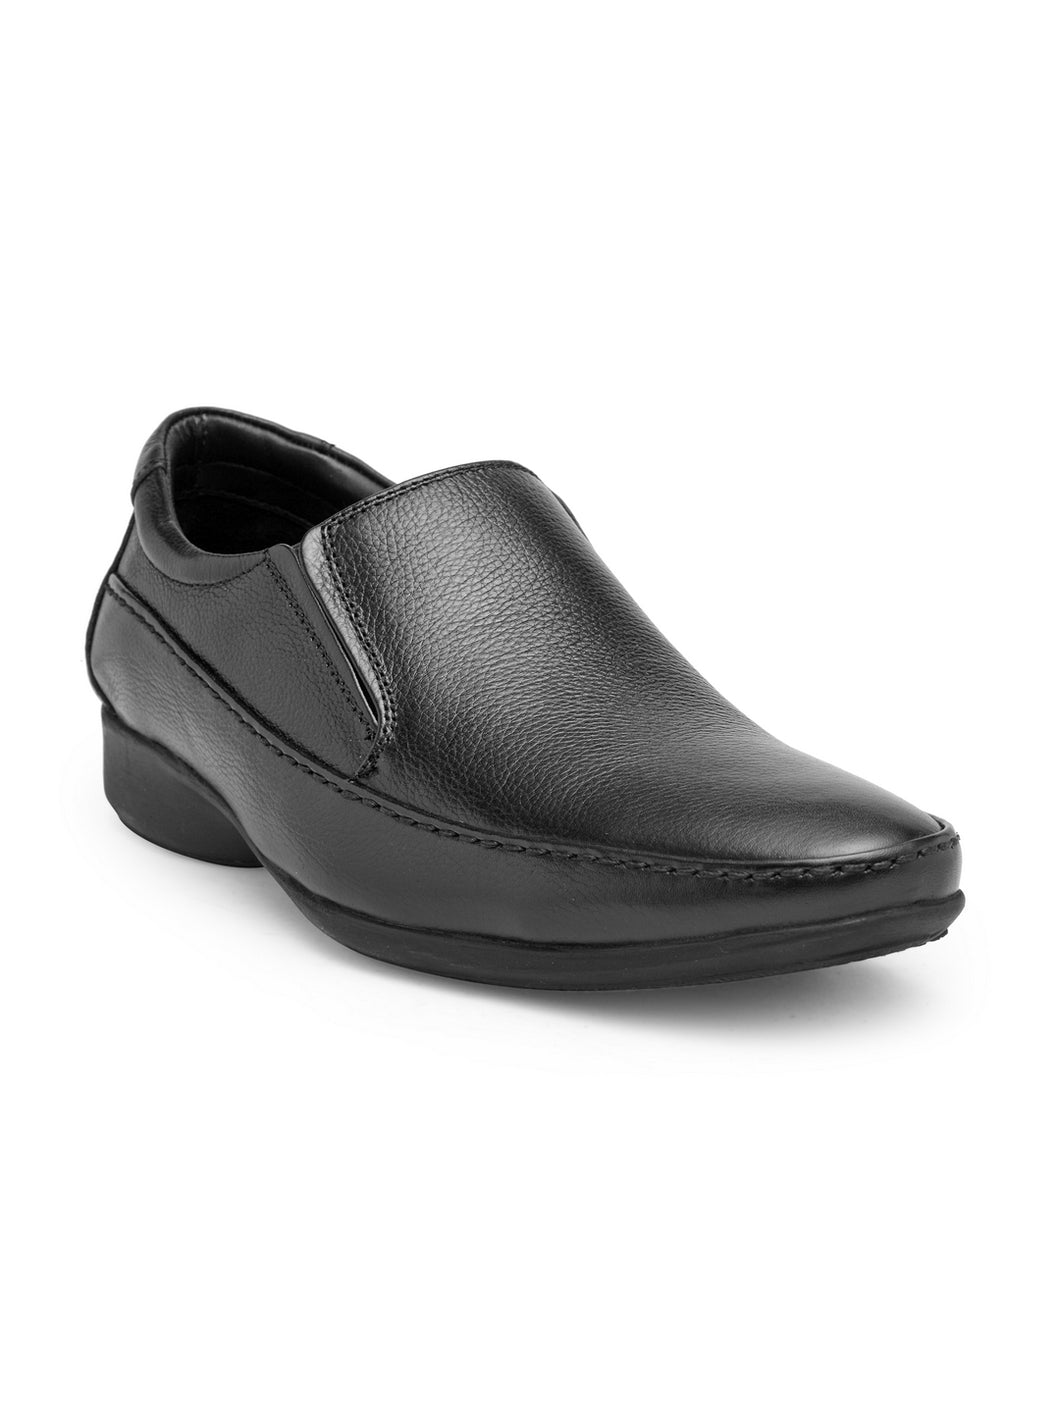 Teakwood Genuine leather Men Black Formal Slip-On Shoes